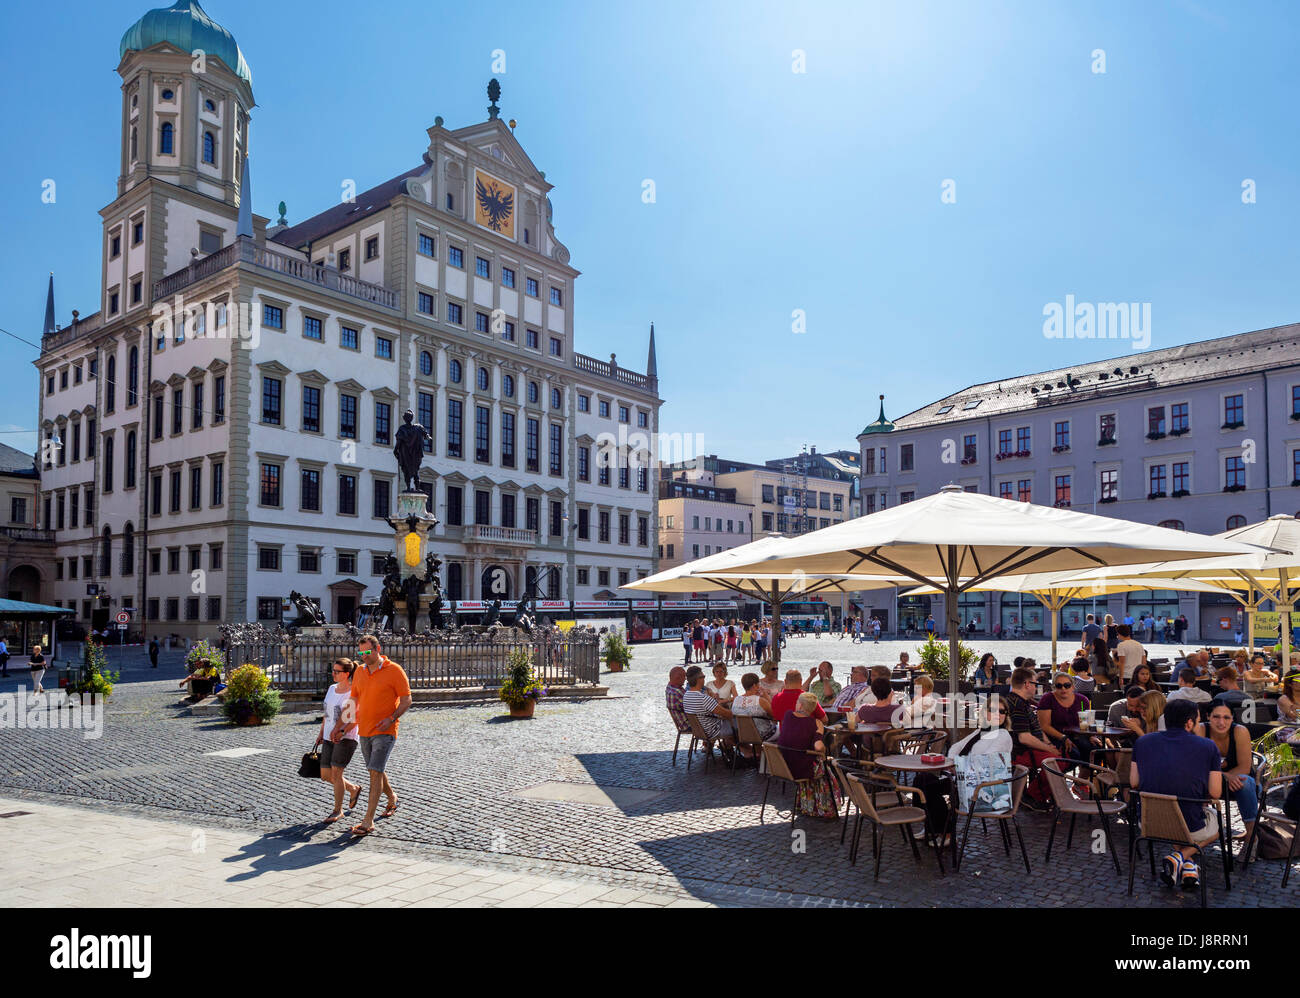 Straßencafé vor dem Rathaus (Rathaus), Rathausplatz, Augsburg, Bayern, Deutschland Stockfoto